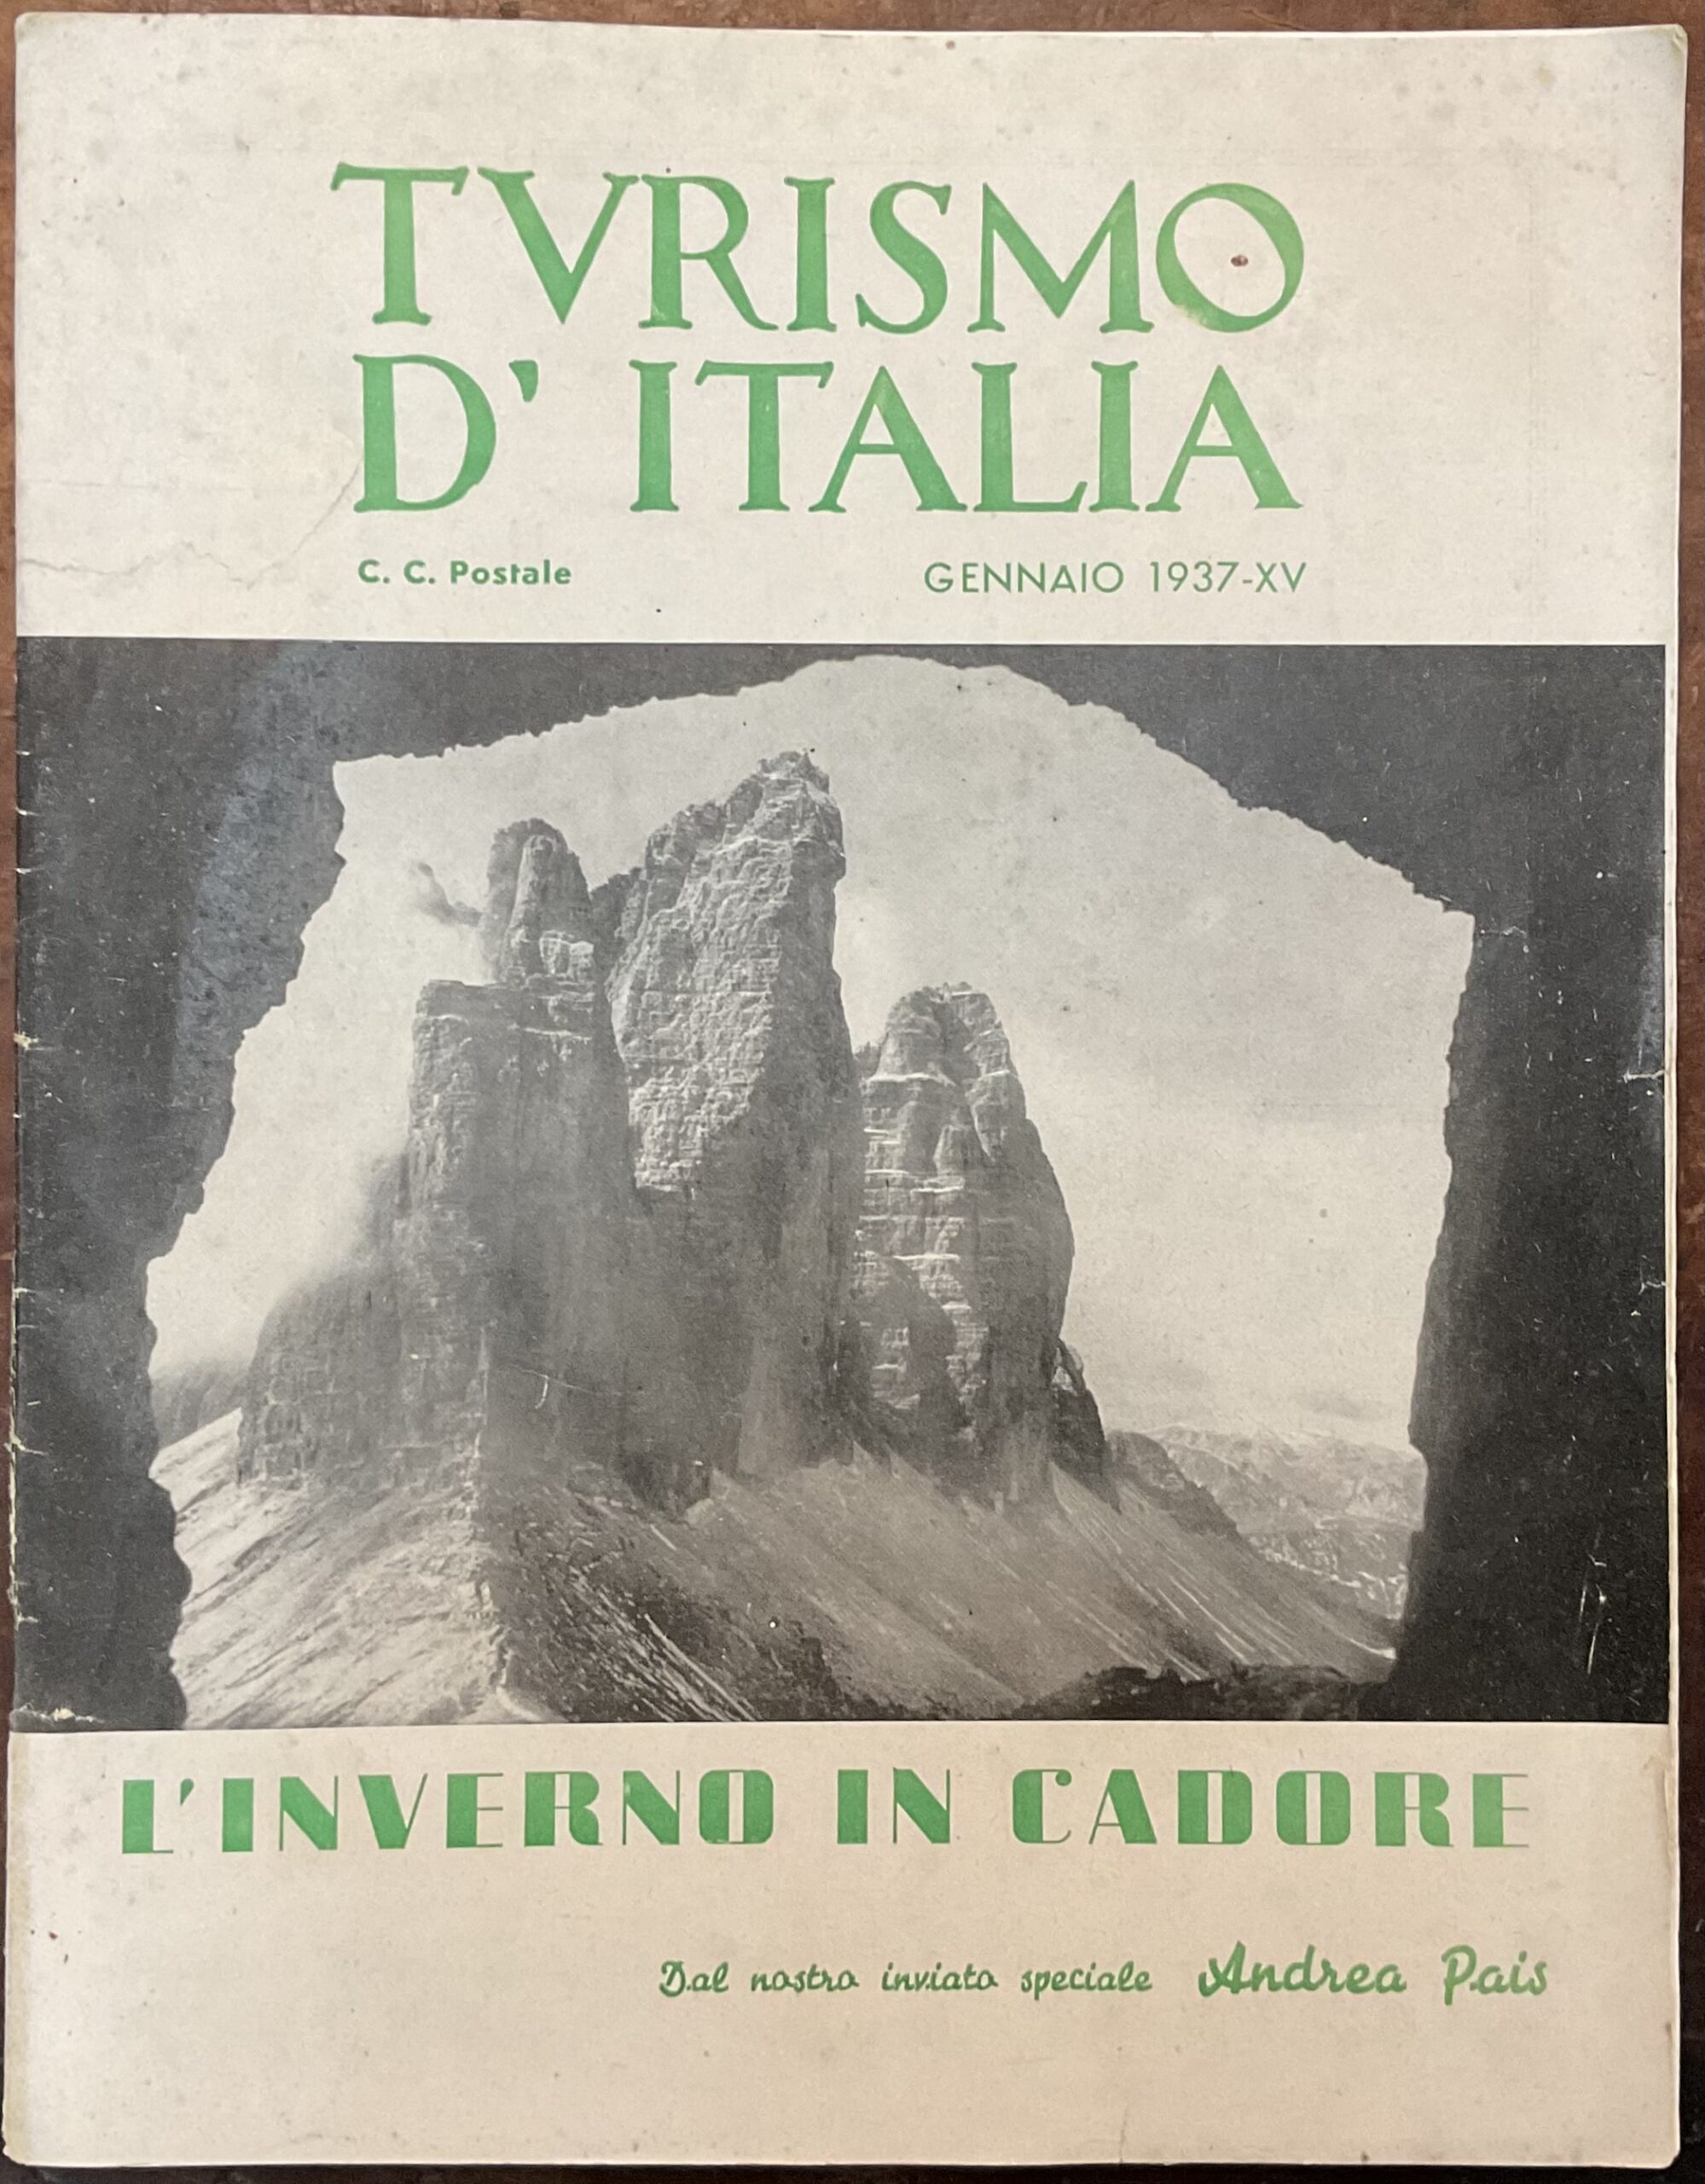 Turismo d’Italia. L’inverno in Cadore. Anno XII, n.1, gennaio 1937